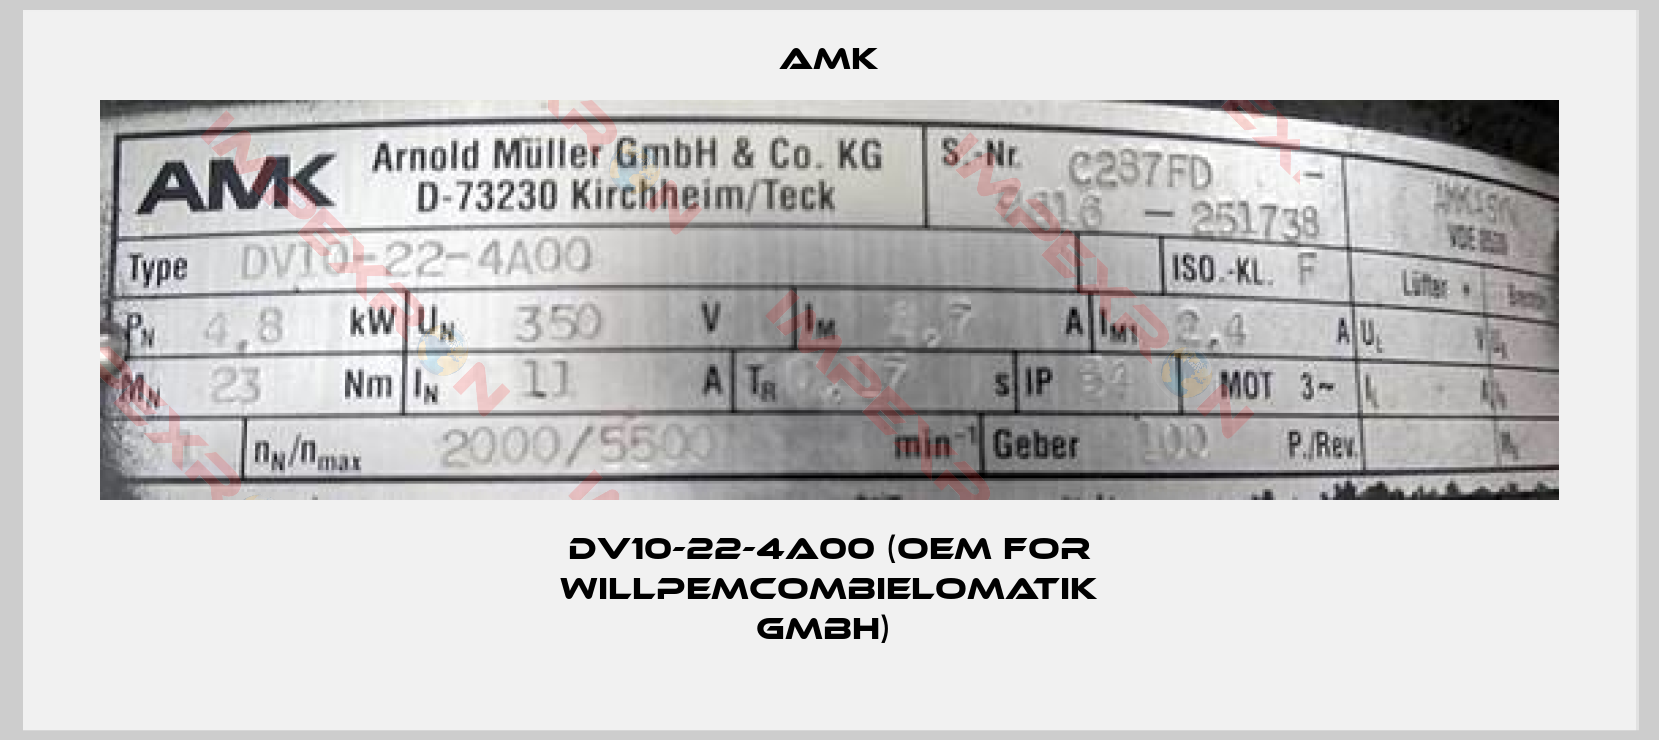 AMK-DV10-22-4A00 (OEM for WillPemcomBielomatik GmbH) 